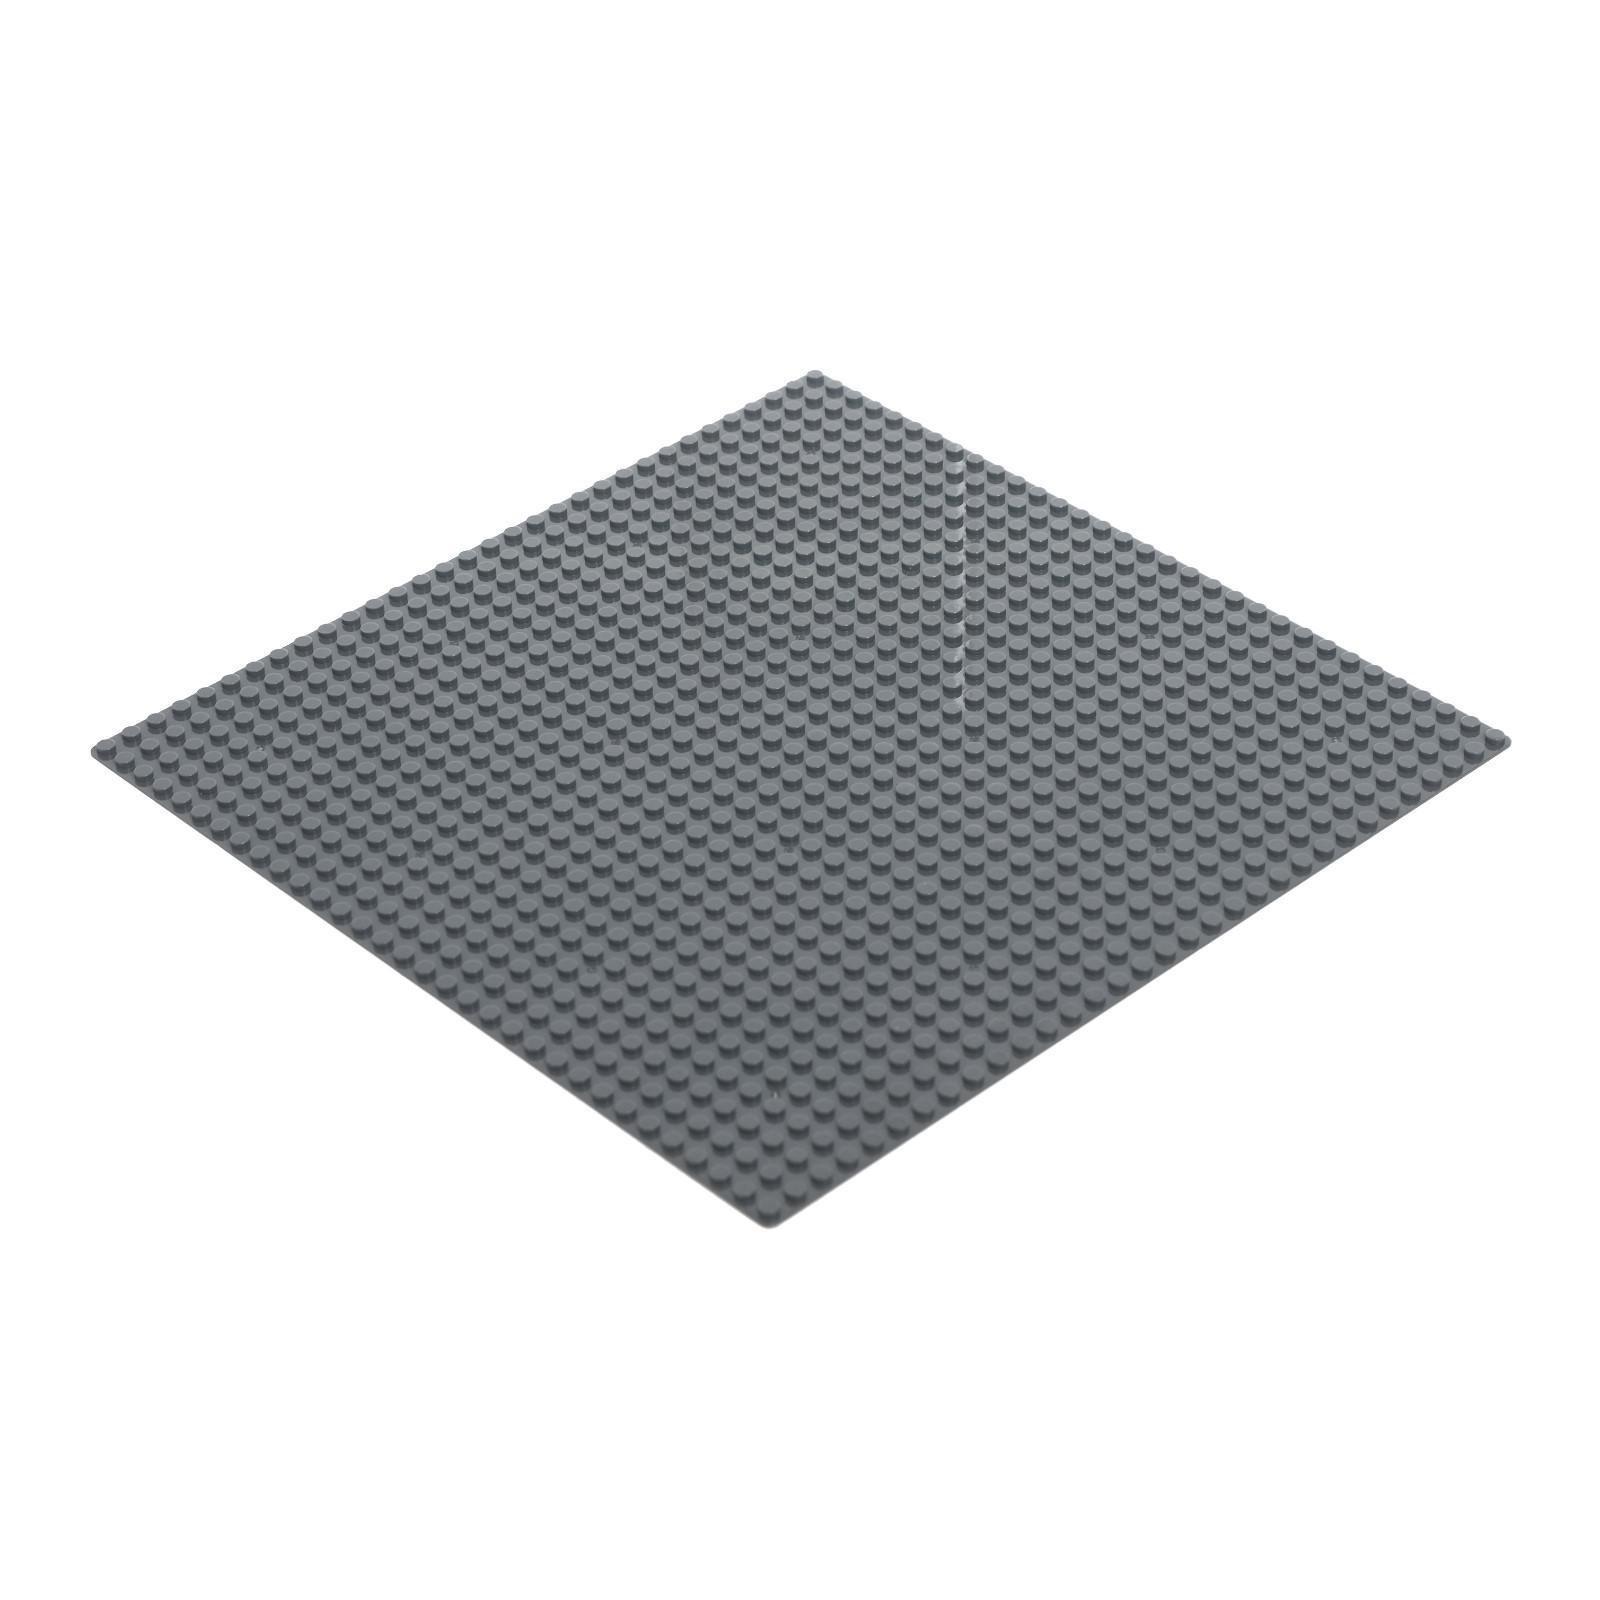 Строительная пластина-основание для конструктора ЛЕГО 25,5x25,5 см. 90004A / Микс